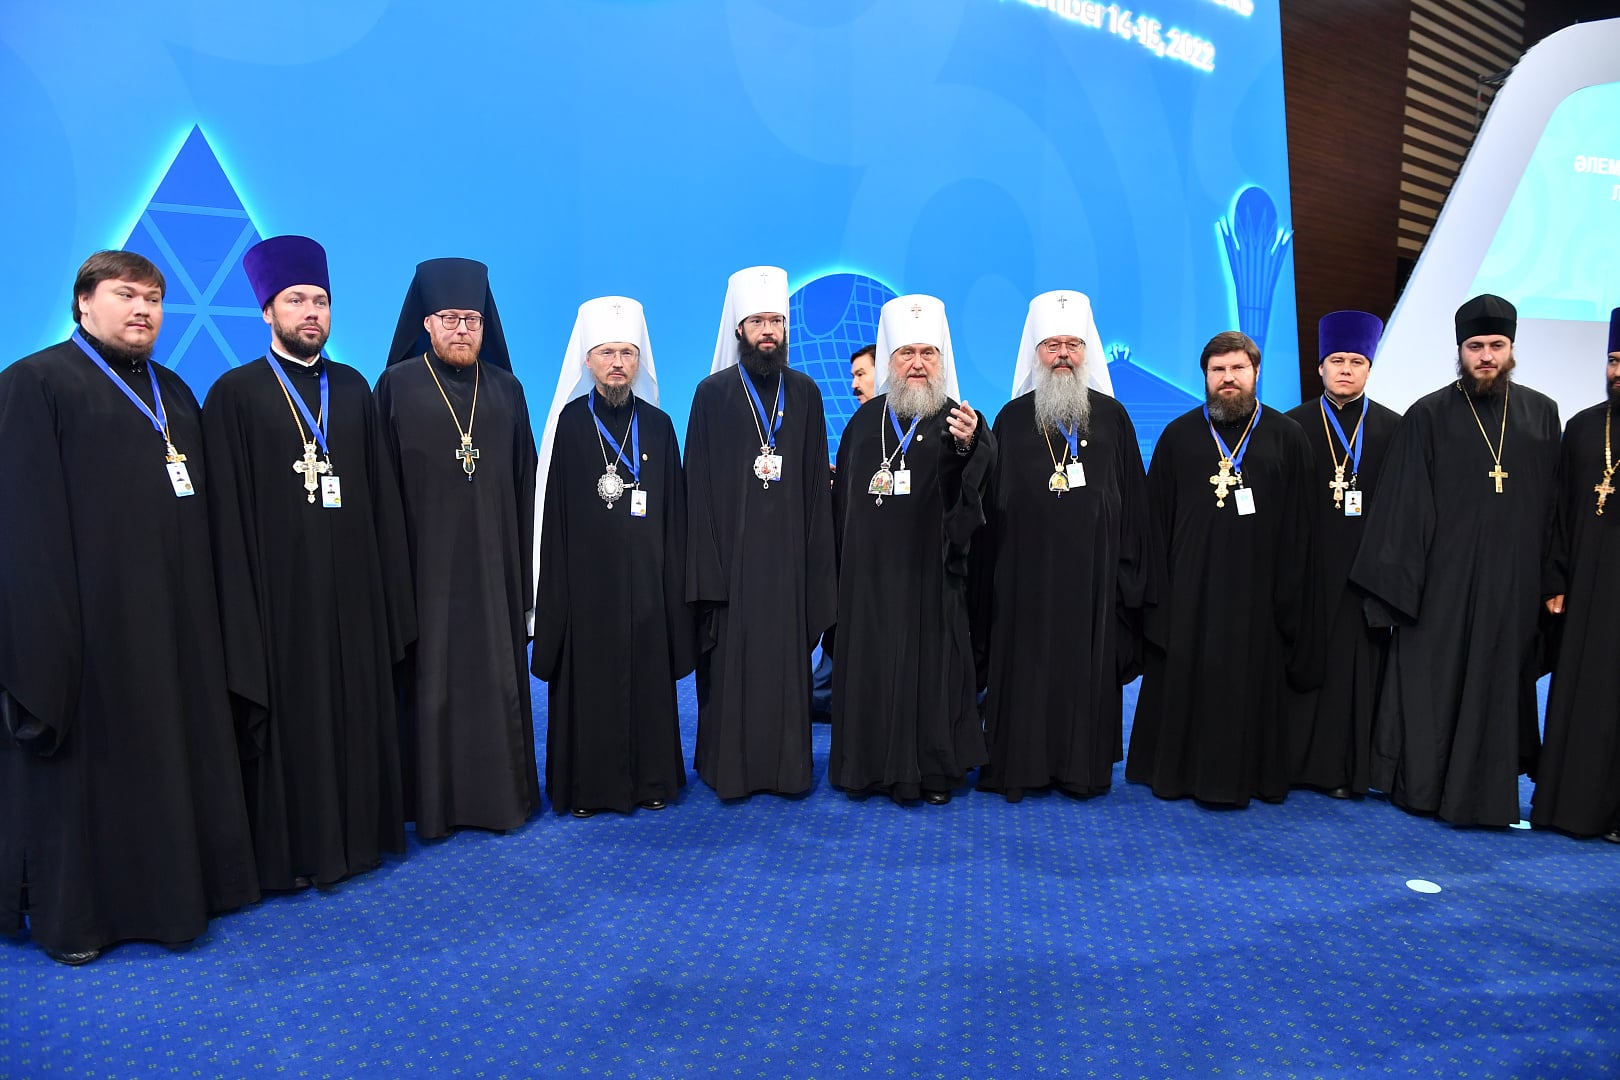 La délégation de l’Église orthodoxe russe participe au viie congrès des dirigeants des religions mondiales et traditionnelles